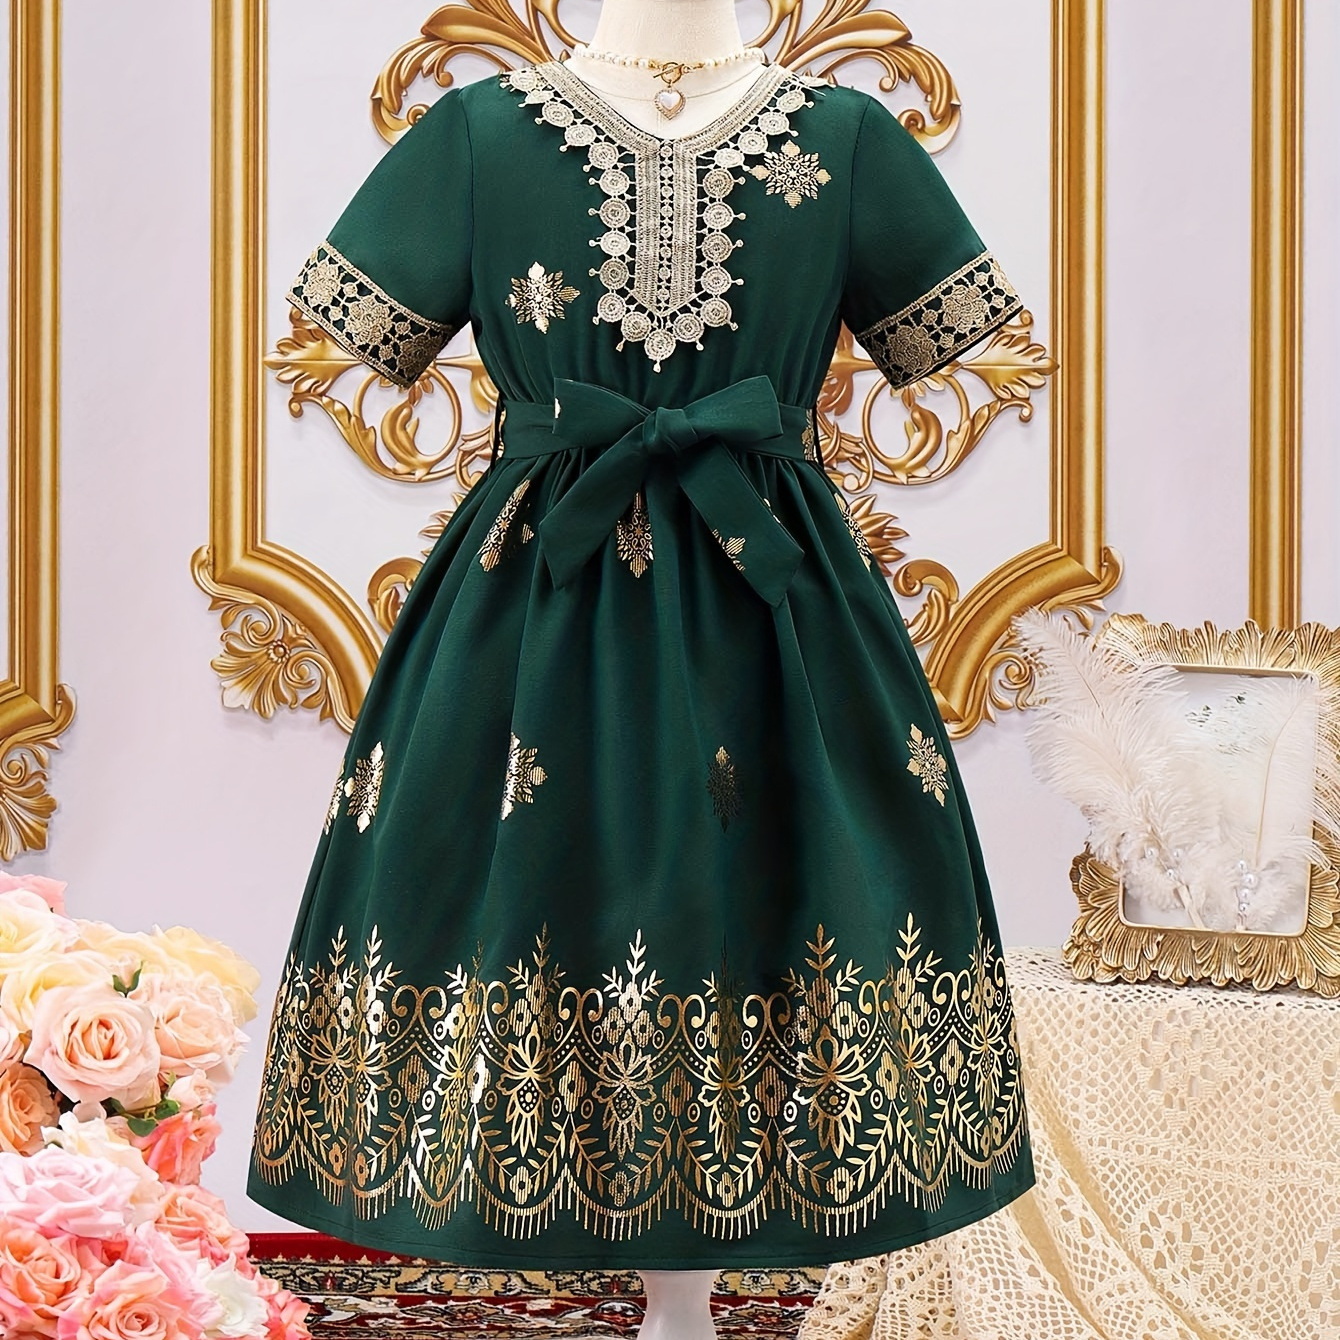 

Ethnic Style Elegant Girl's Dress For Party Gift, Flower Design Dresses For Girls